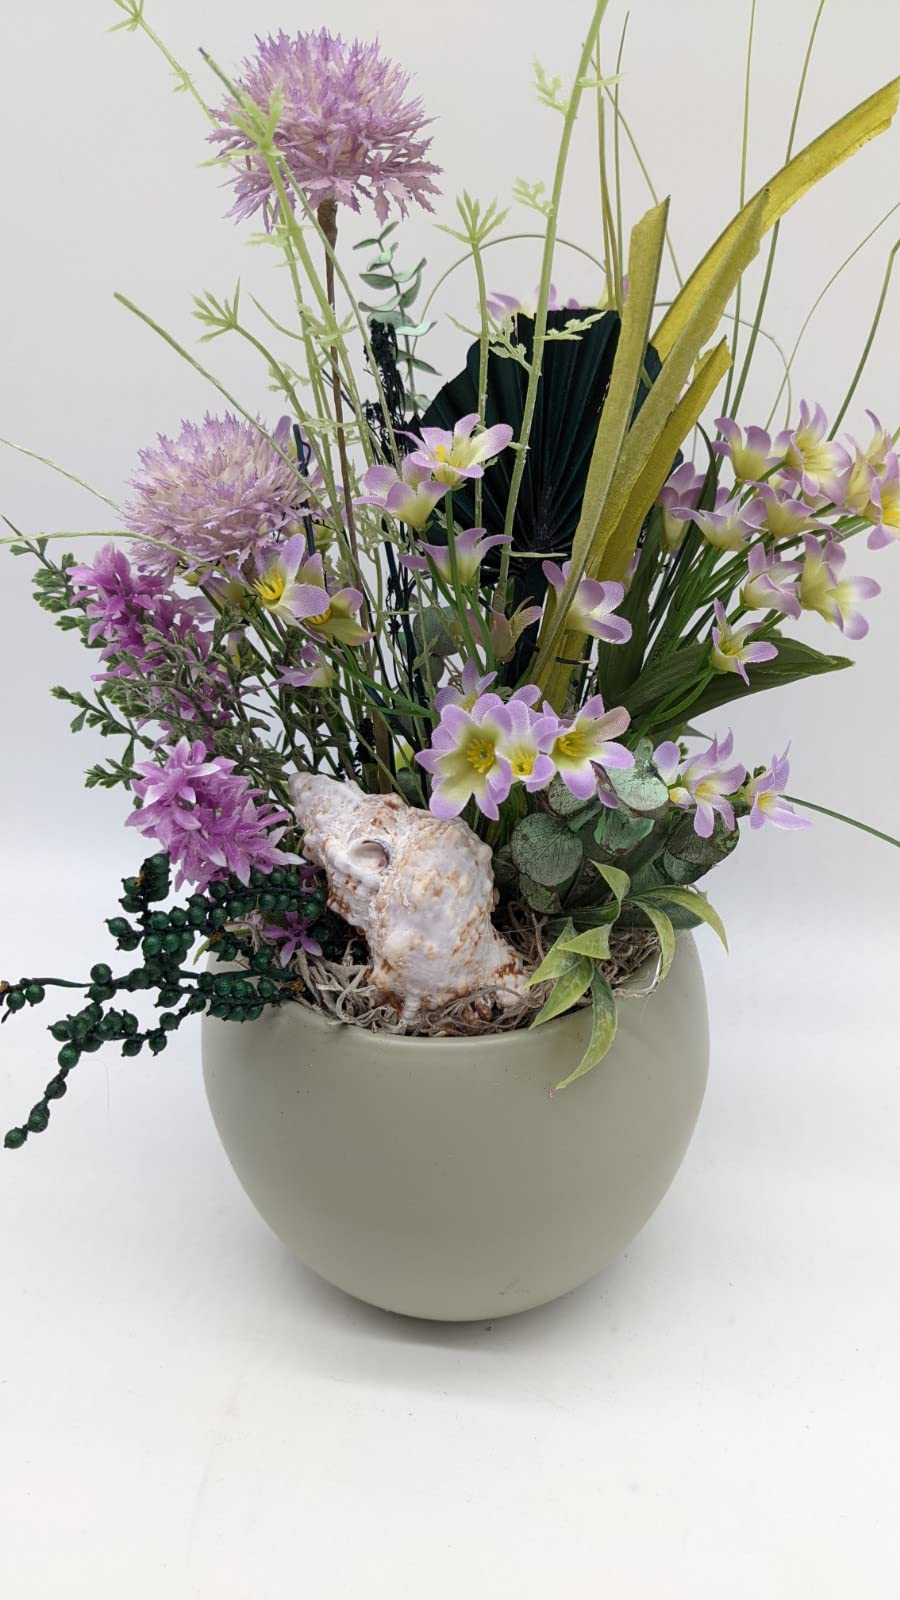 Tischgesteck Sommergesteck Wiesenblumen Muschel Blüten Gräser lila weiß